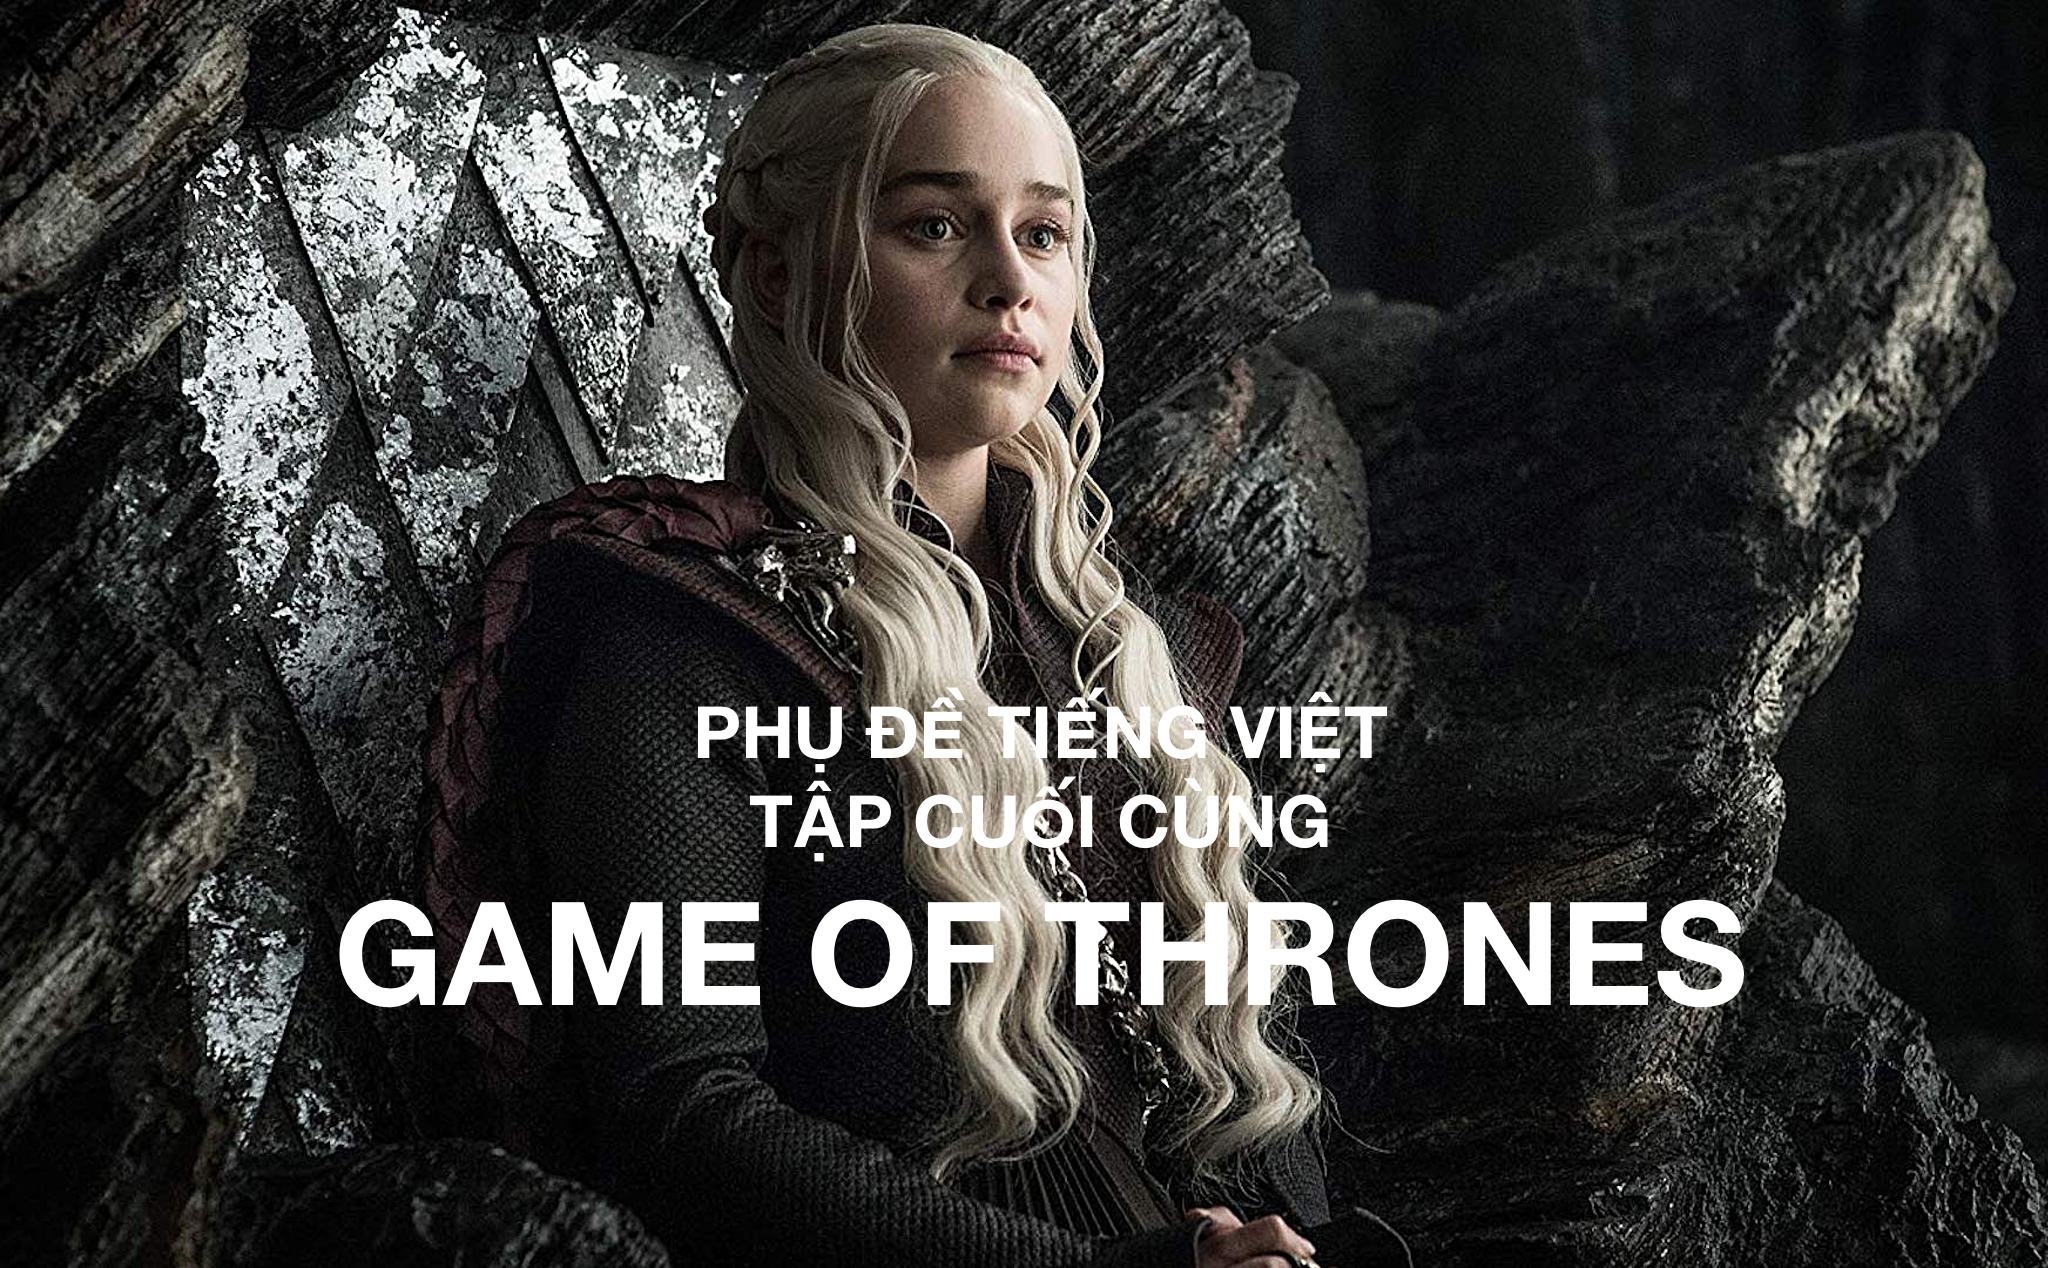 Phụ đề tiếng Việt tập cuối cùng Game Of Thrones - Trò chơi kết thúc